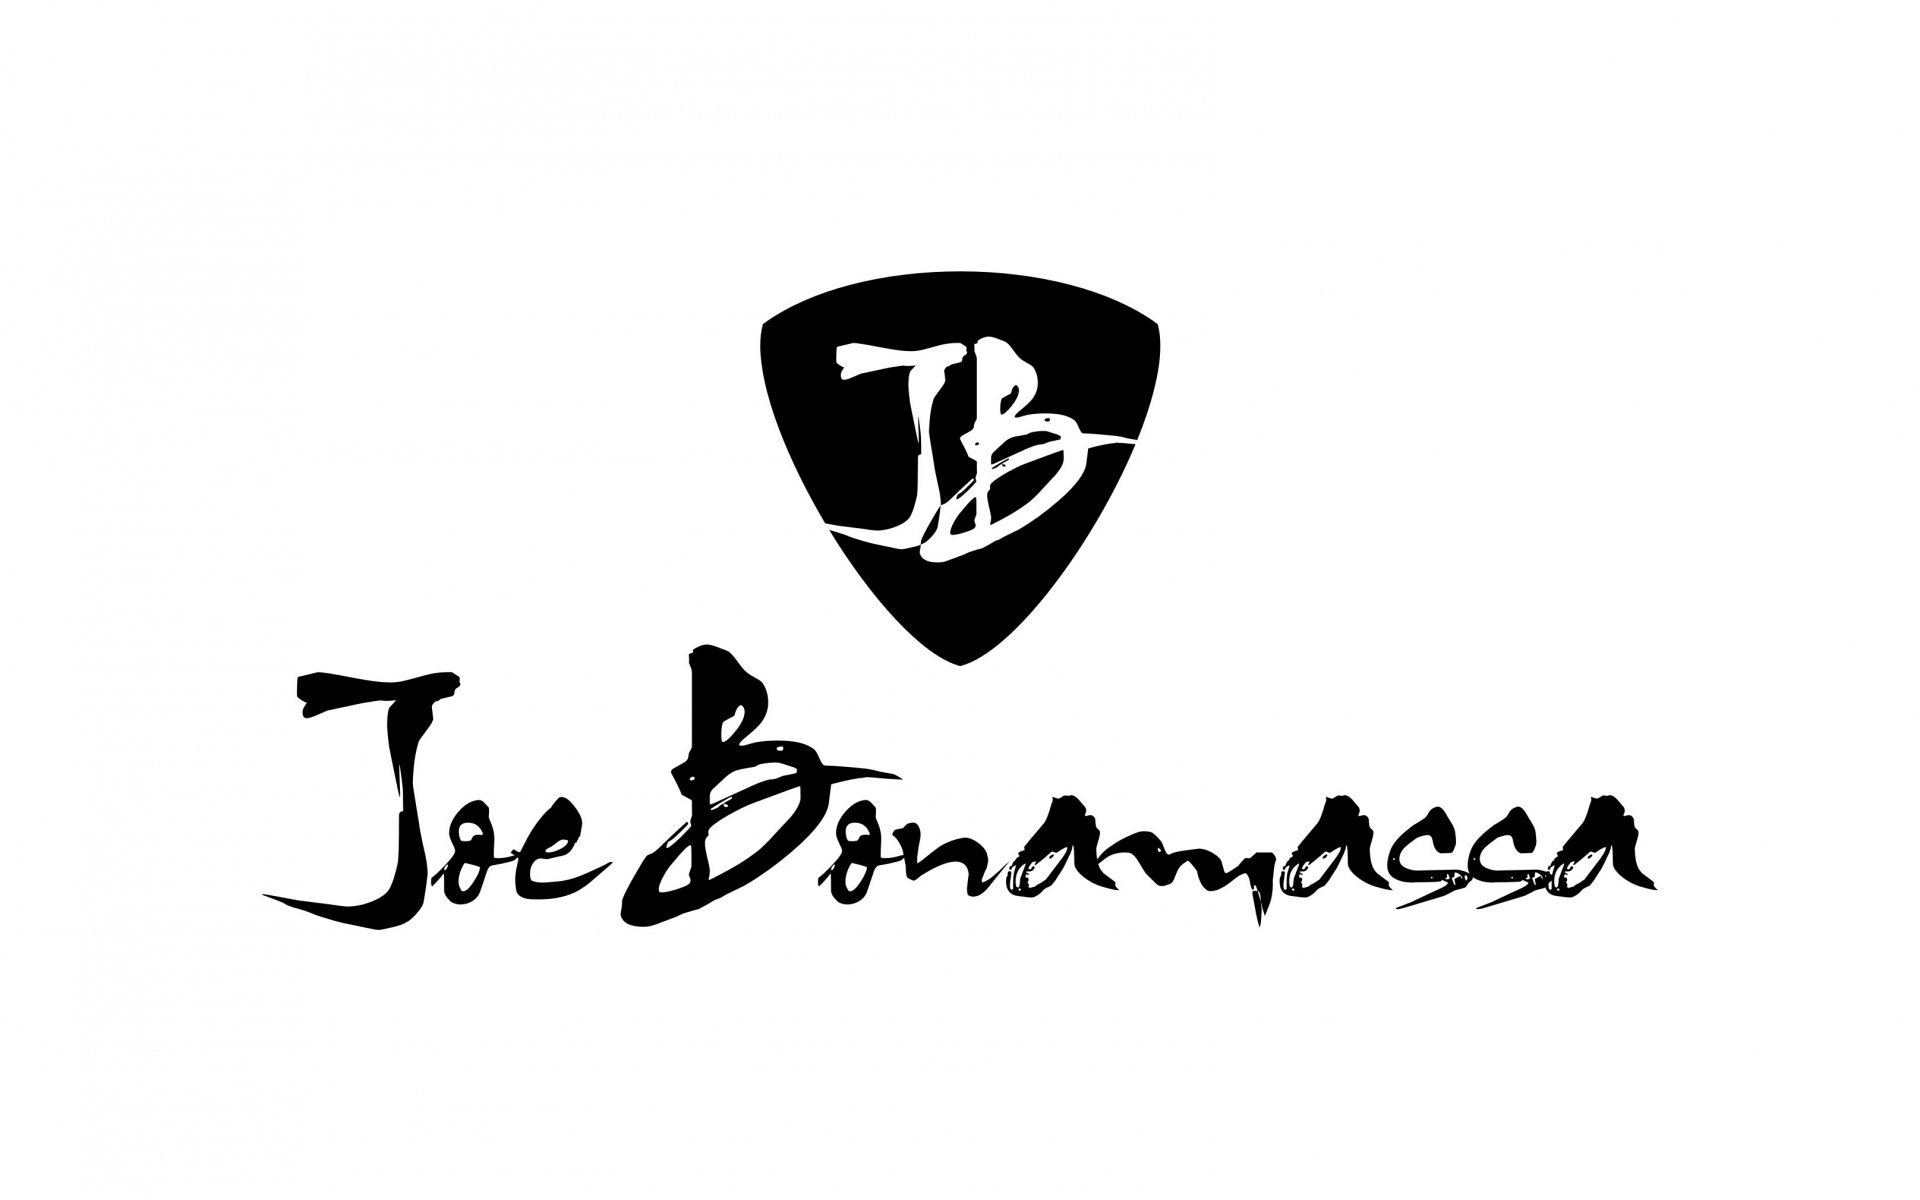 Joe Bonamassa HD Wallpaper Background Image